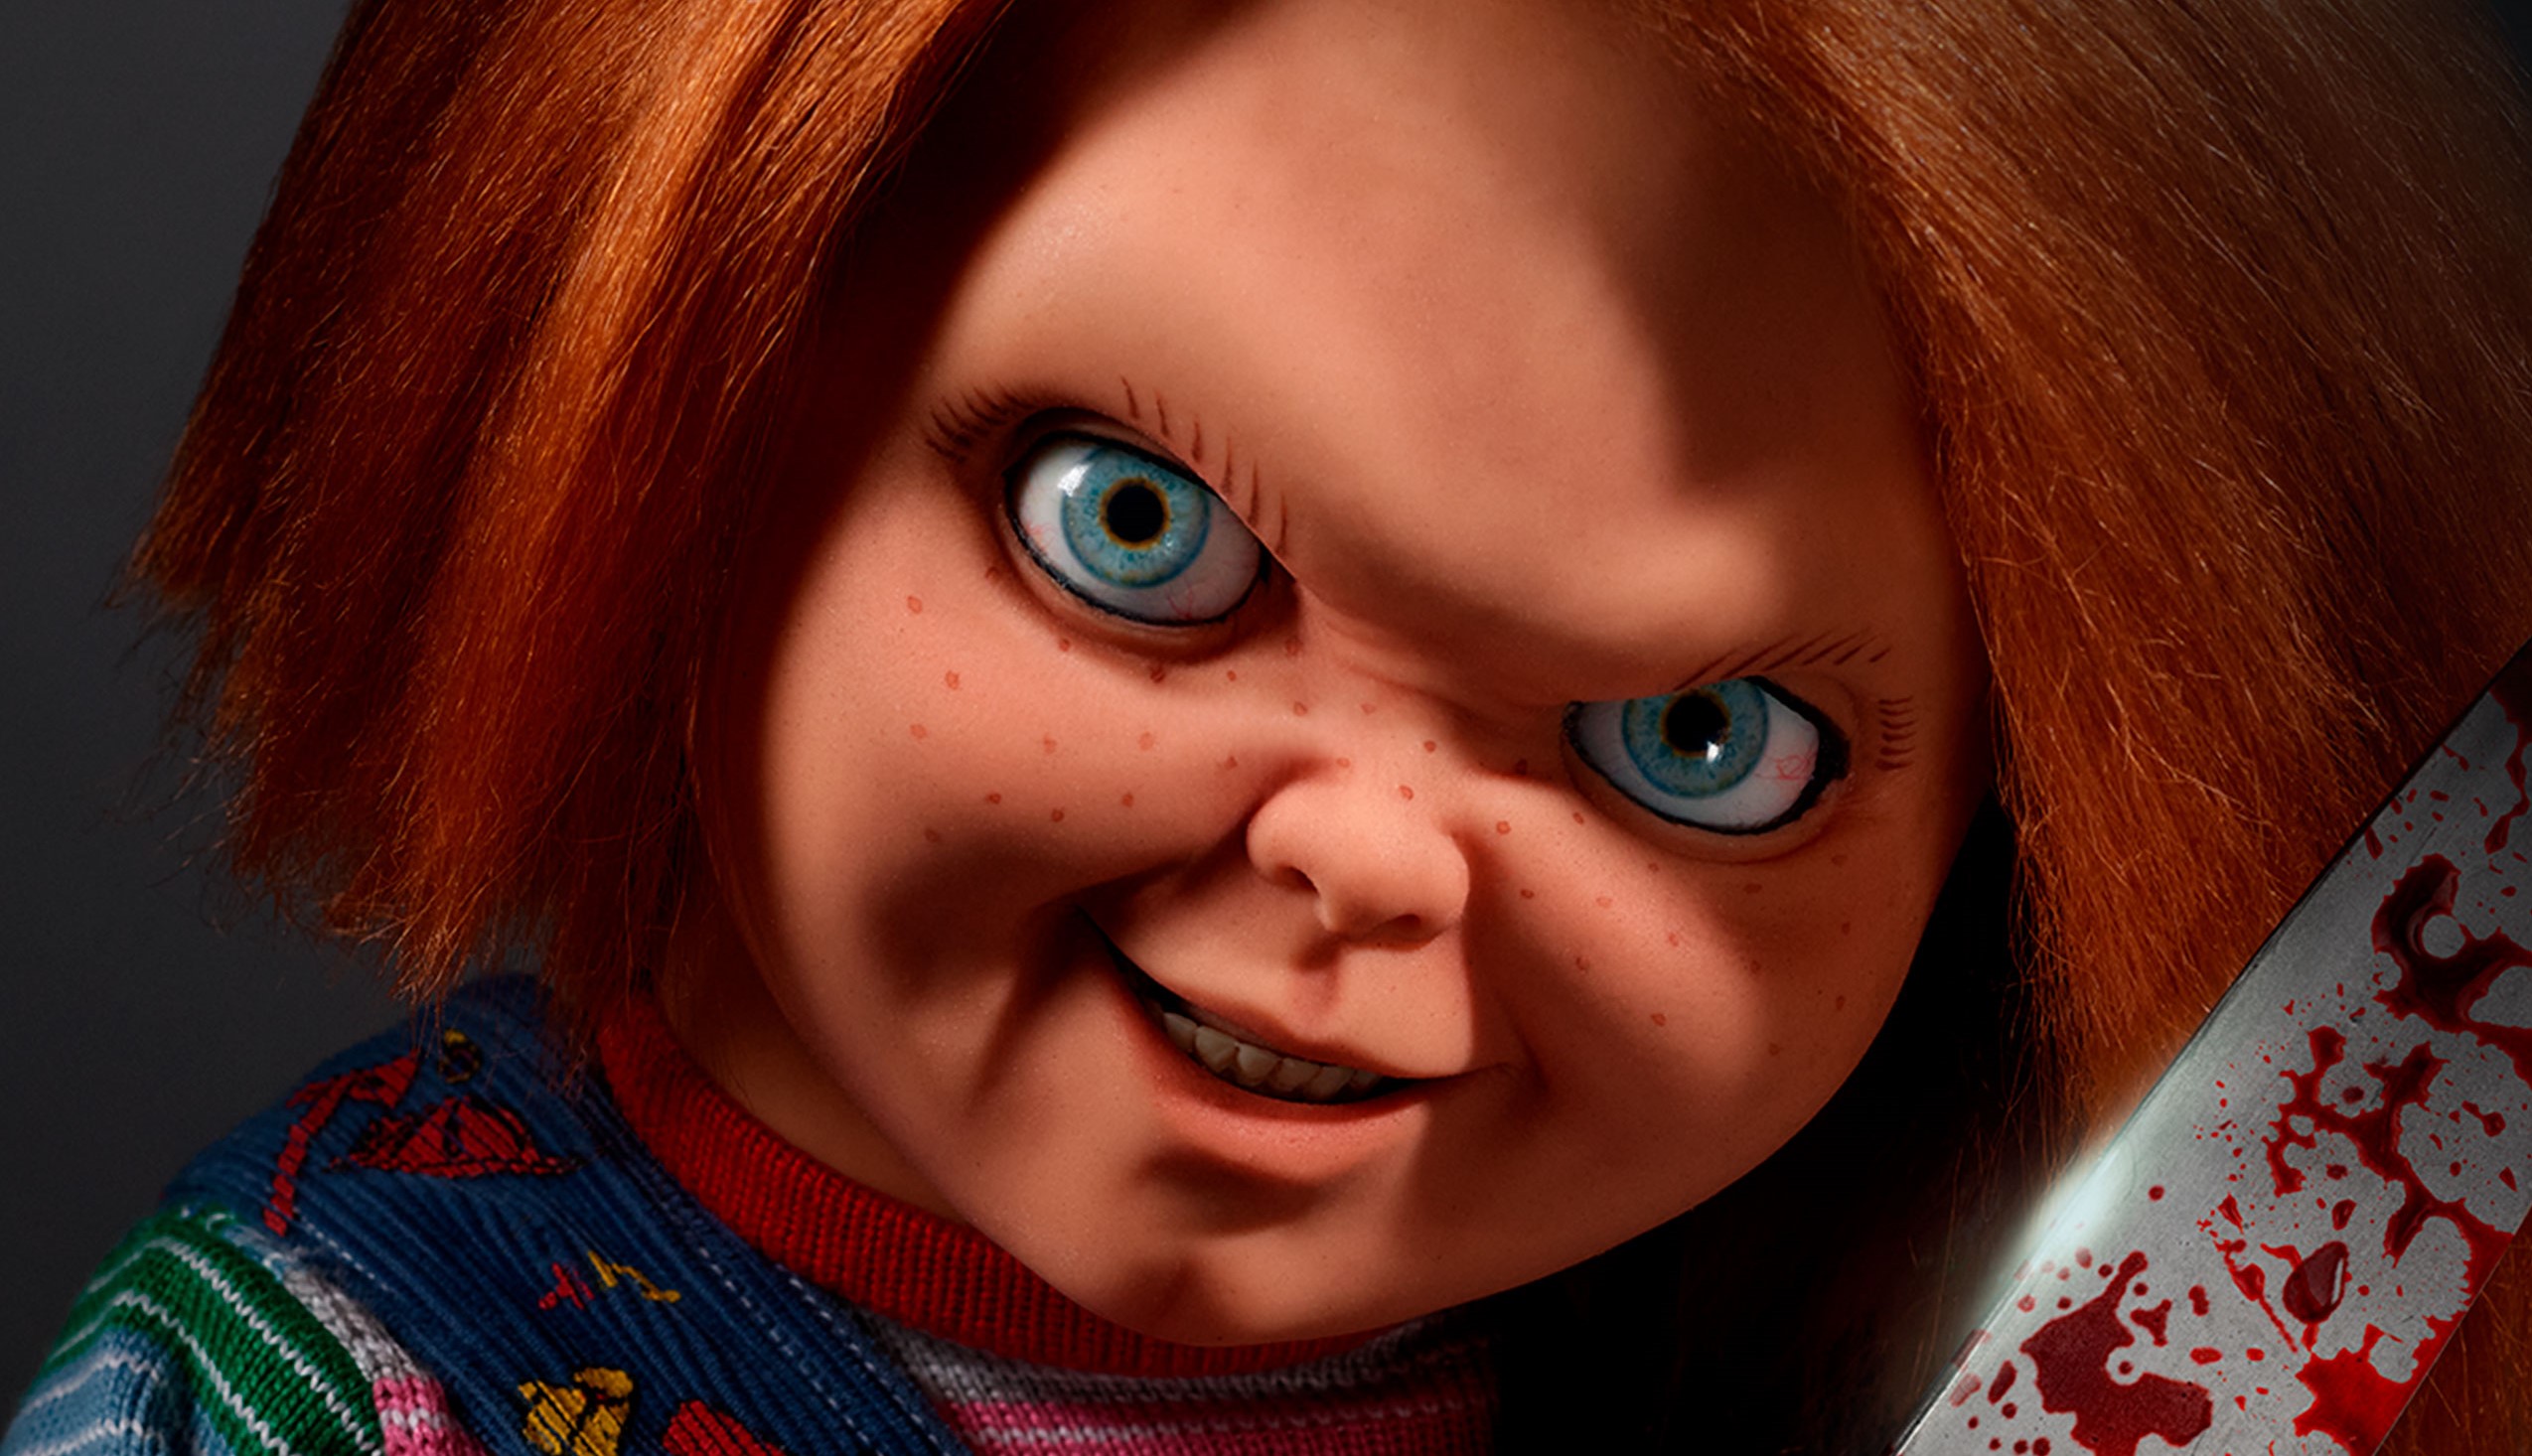 Улыбающаяся кукла-убийца на русском постере сериала "Чаки" .